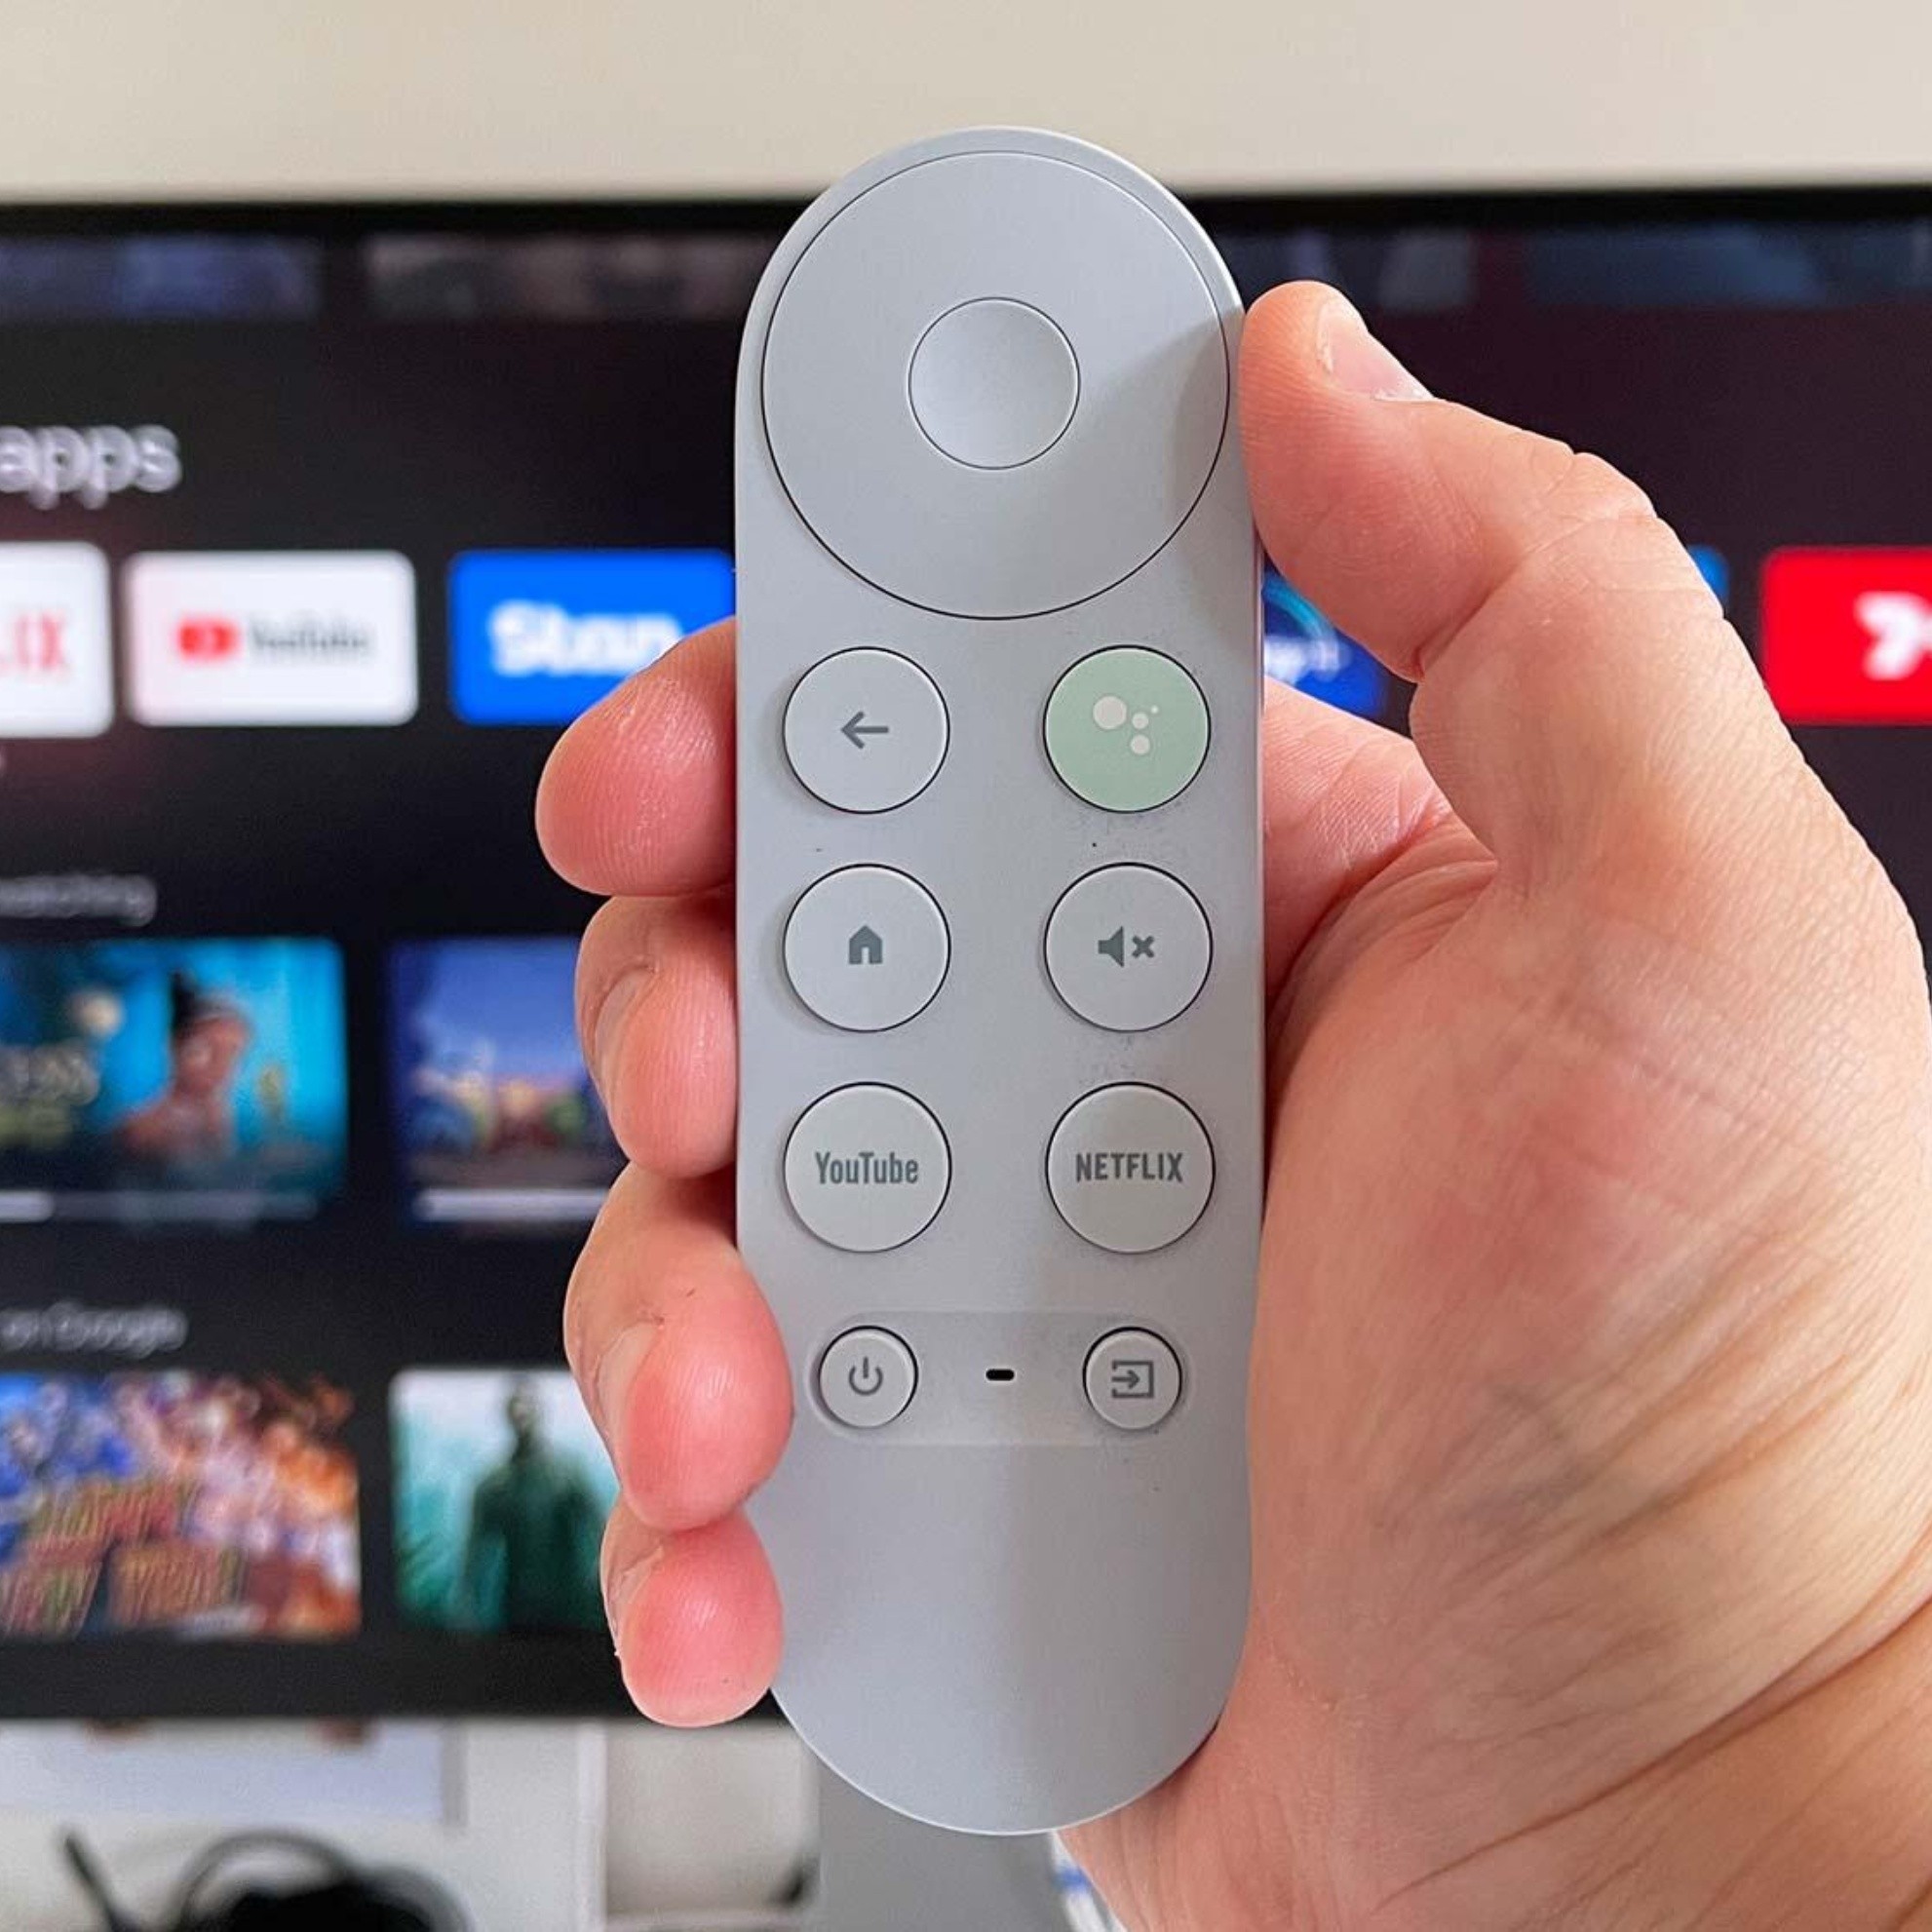 Google TV se renueva y cuenta con más de 30 servicios de TV y VOD